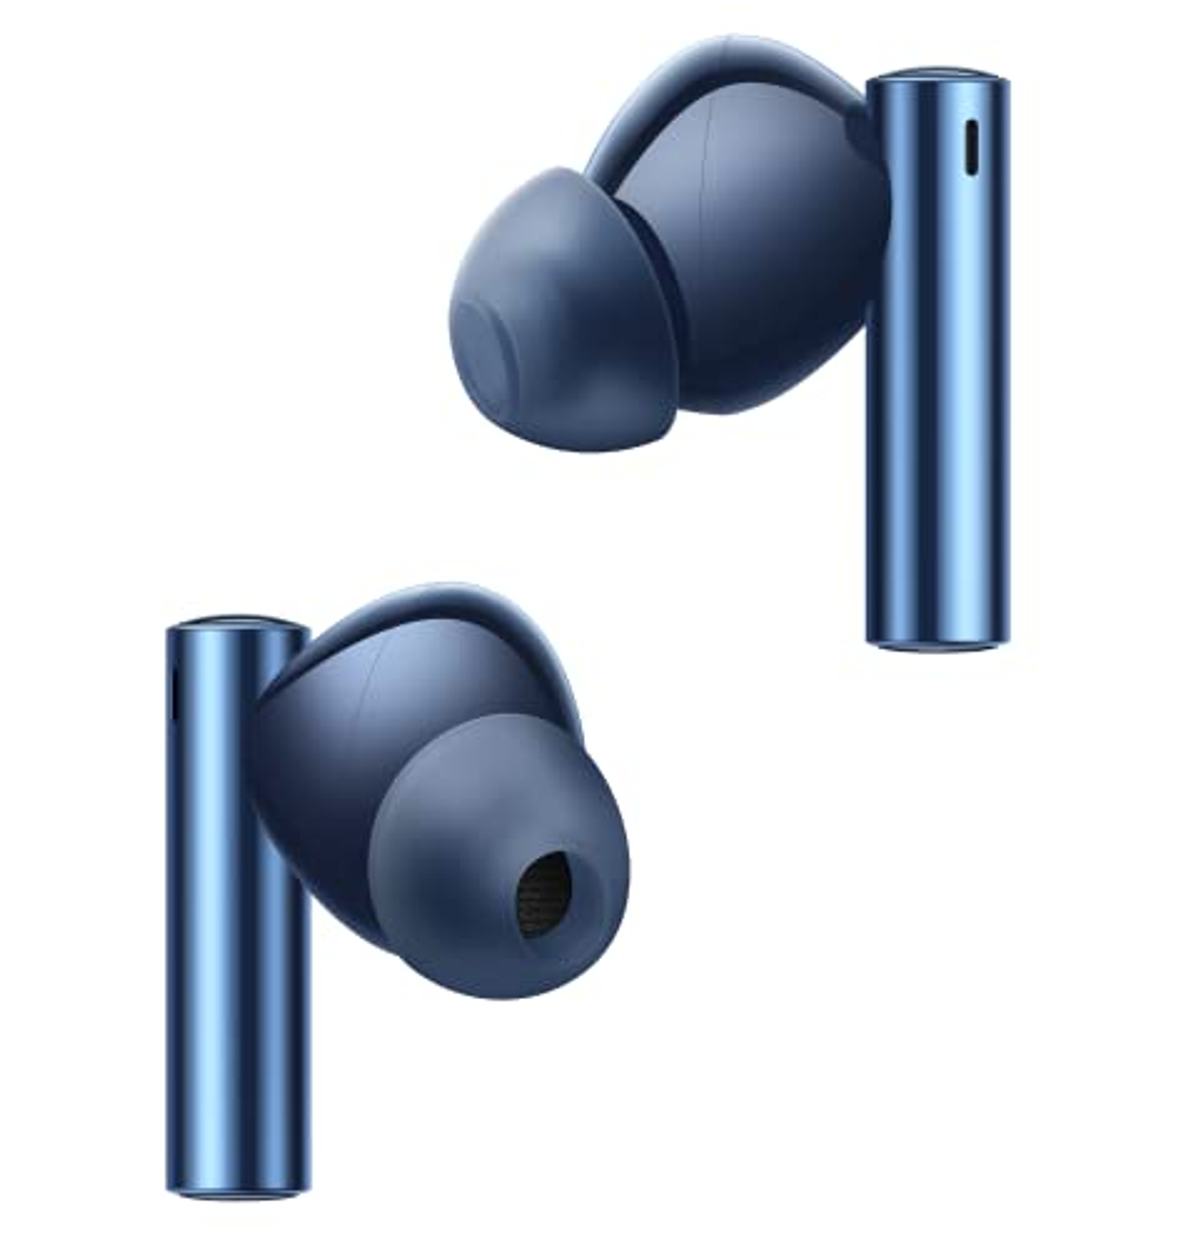 Blau Air REALME Bluetooth Buds 3, Kopfhörer Bluetooth In-ear